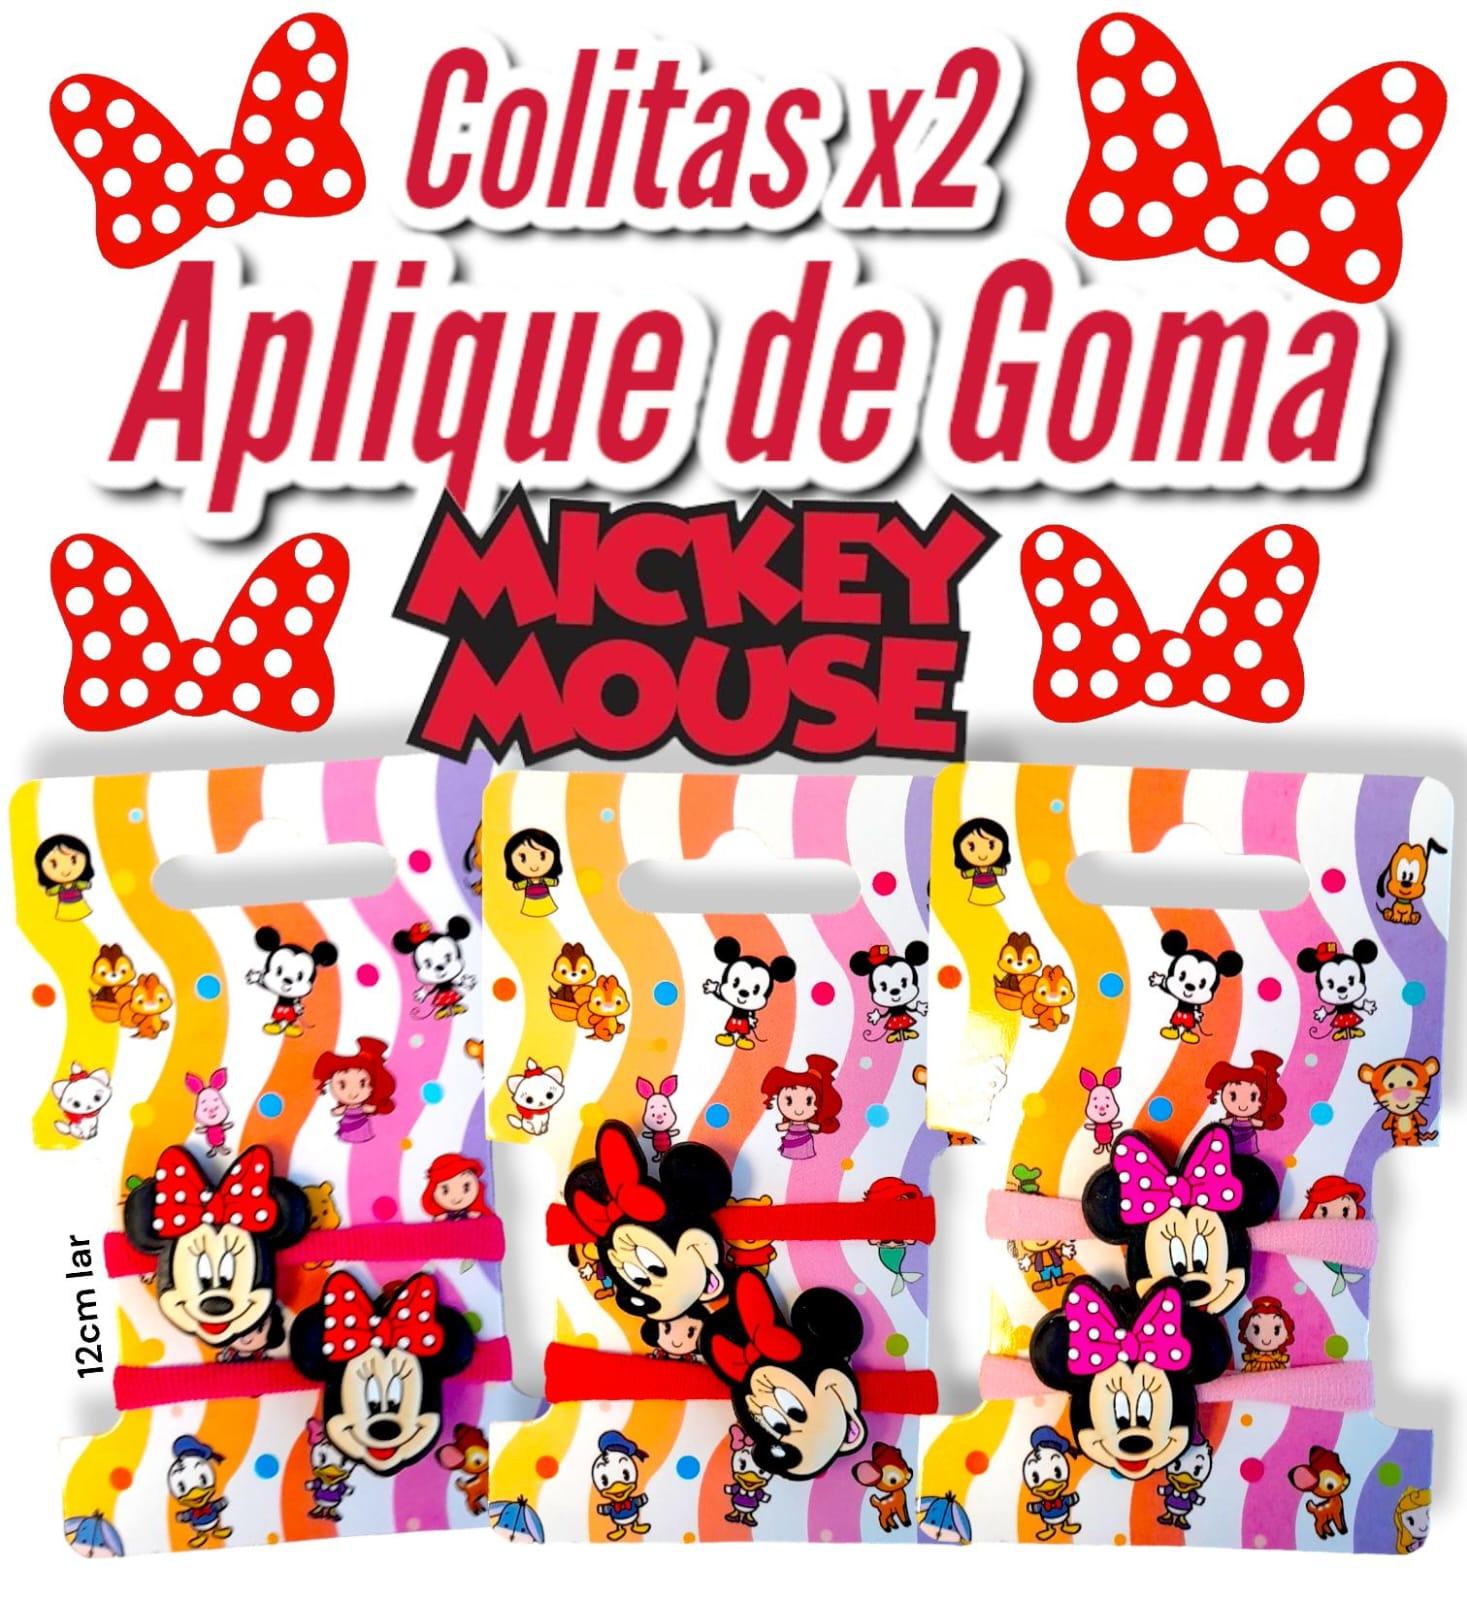 Colitas x2 Aplique de Goma MICKEY MOUSE 